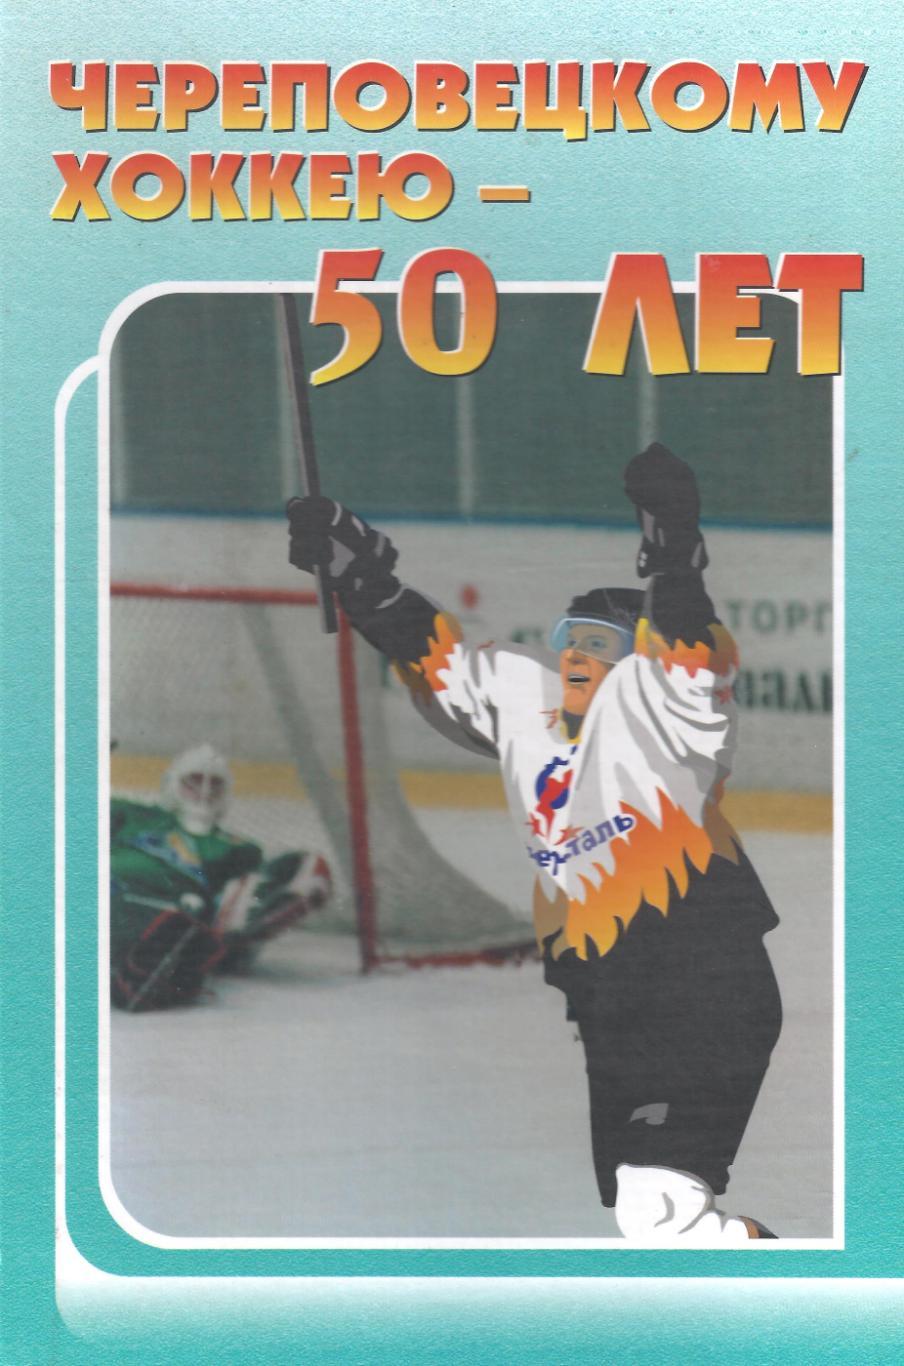 Череповецкому хоккею - 50 лет